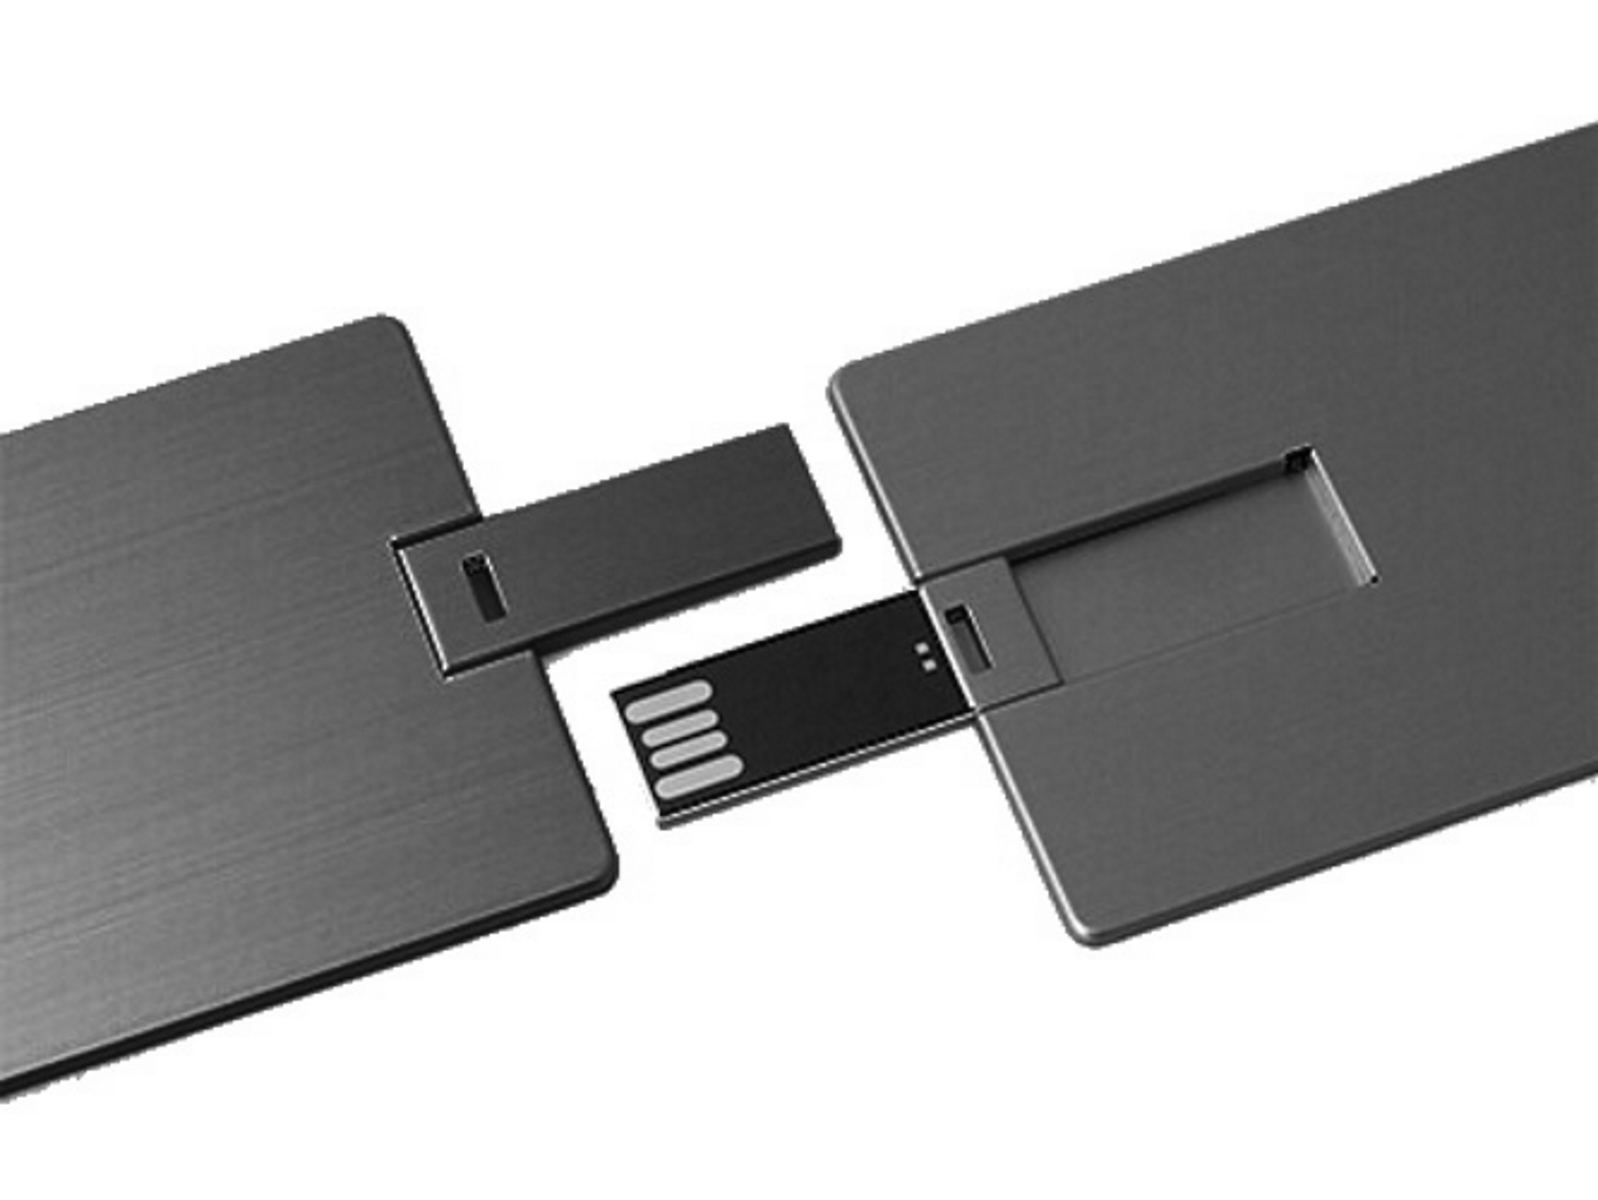 USB GERMANY 2 (Schwarz, GB) Metall-Kreditkarte ® USB-Stick